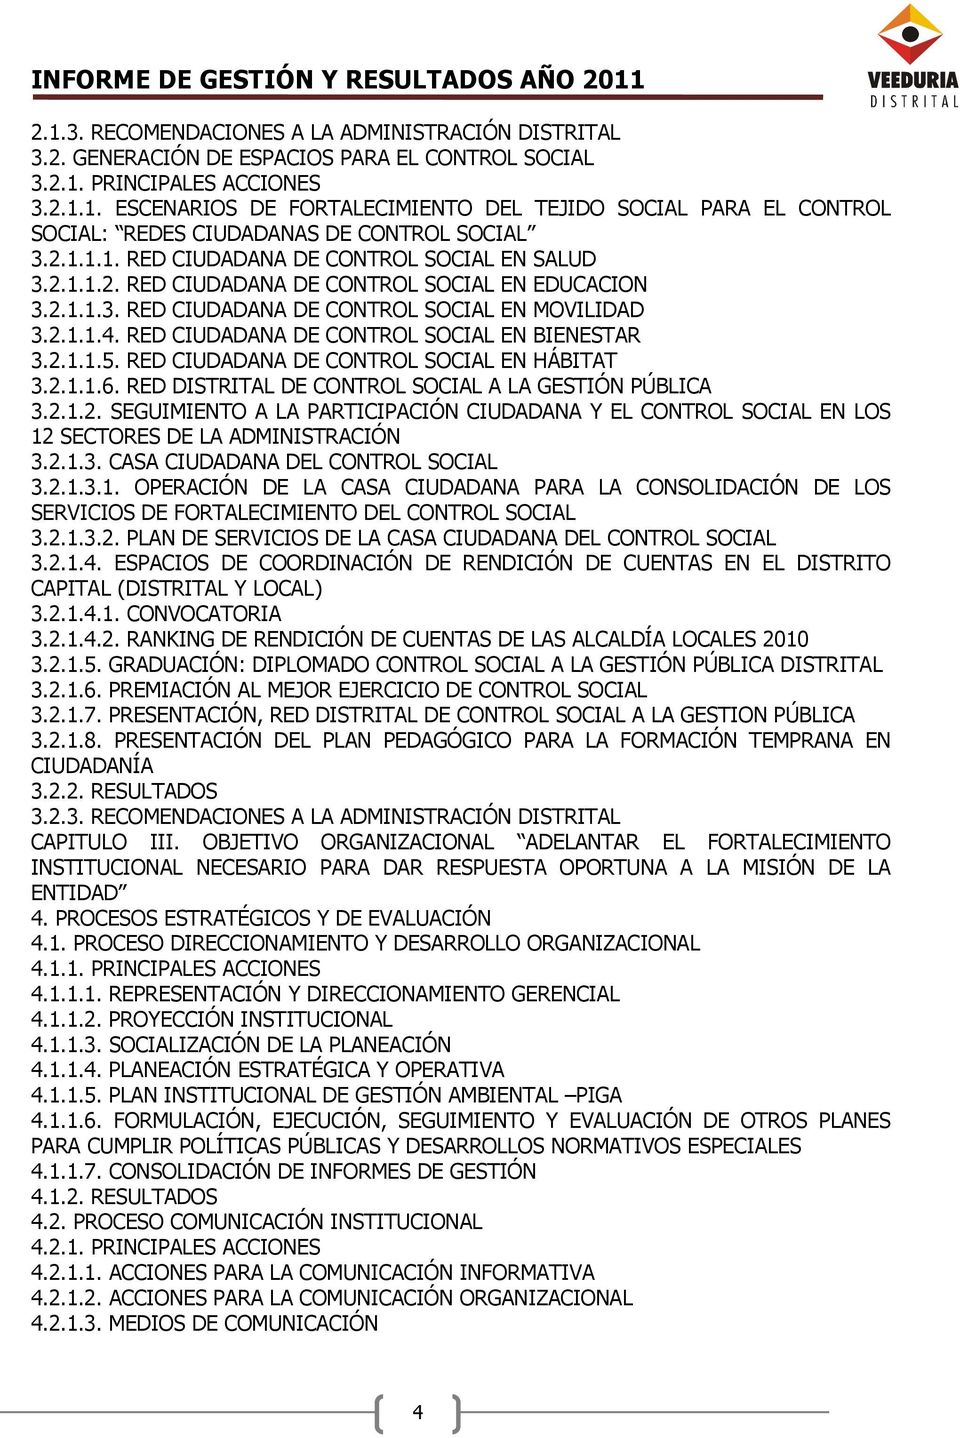 RED CIUDADANA DE CONTROL SOCIAL EN BIENESTAR 3.2.1.1.5. RED CIUDADANA DE CONTROL SOCIAL EN HÁBITAT 3.2.1.1.6. RED DISTRITAL DE CONTROL SOCIAL A LA GESTIÓN PÚBLICA 3.2.1.2. SEGUIMIENTO A LA PARTICIPACIÓN CIUDADANA Y EL CONTROL SOCIAL EN LOS 12 SECTORES DE LA ADMINISTRACIÓN 3.